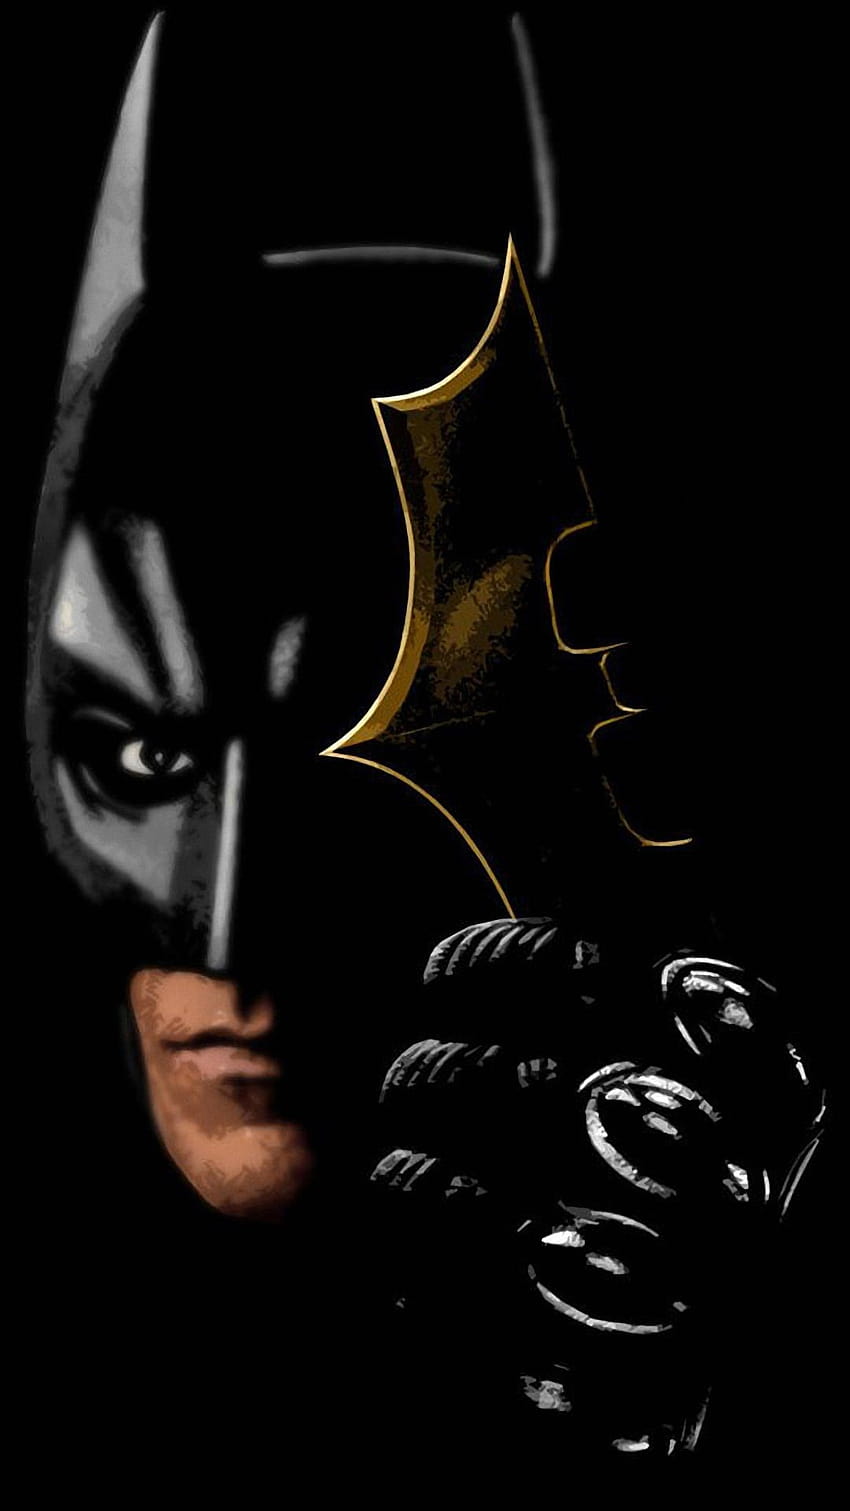 batman hd wallpaper 1080p